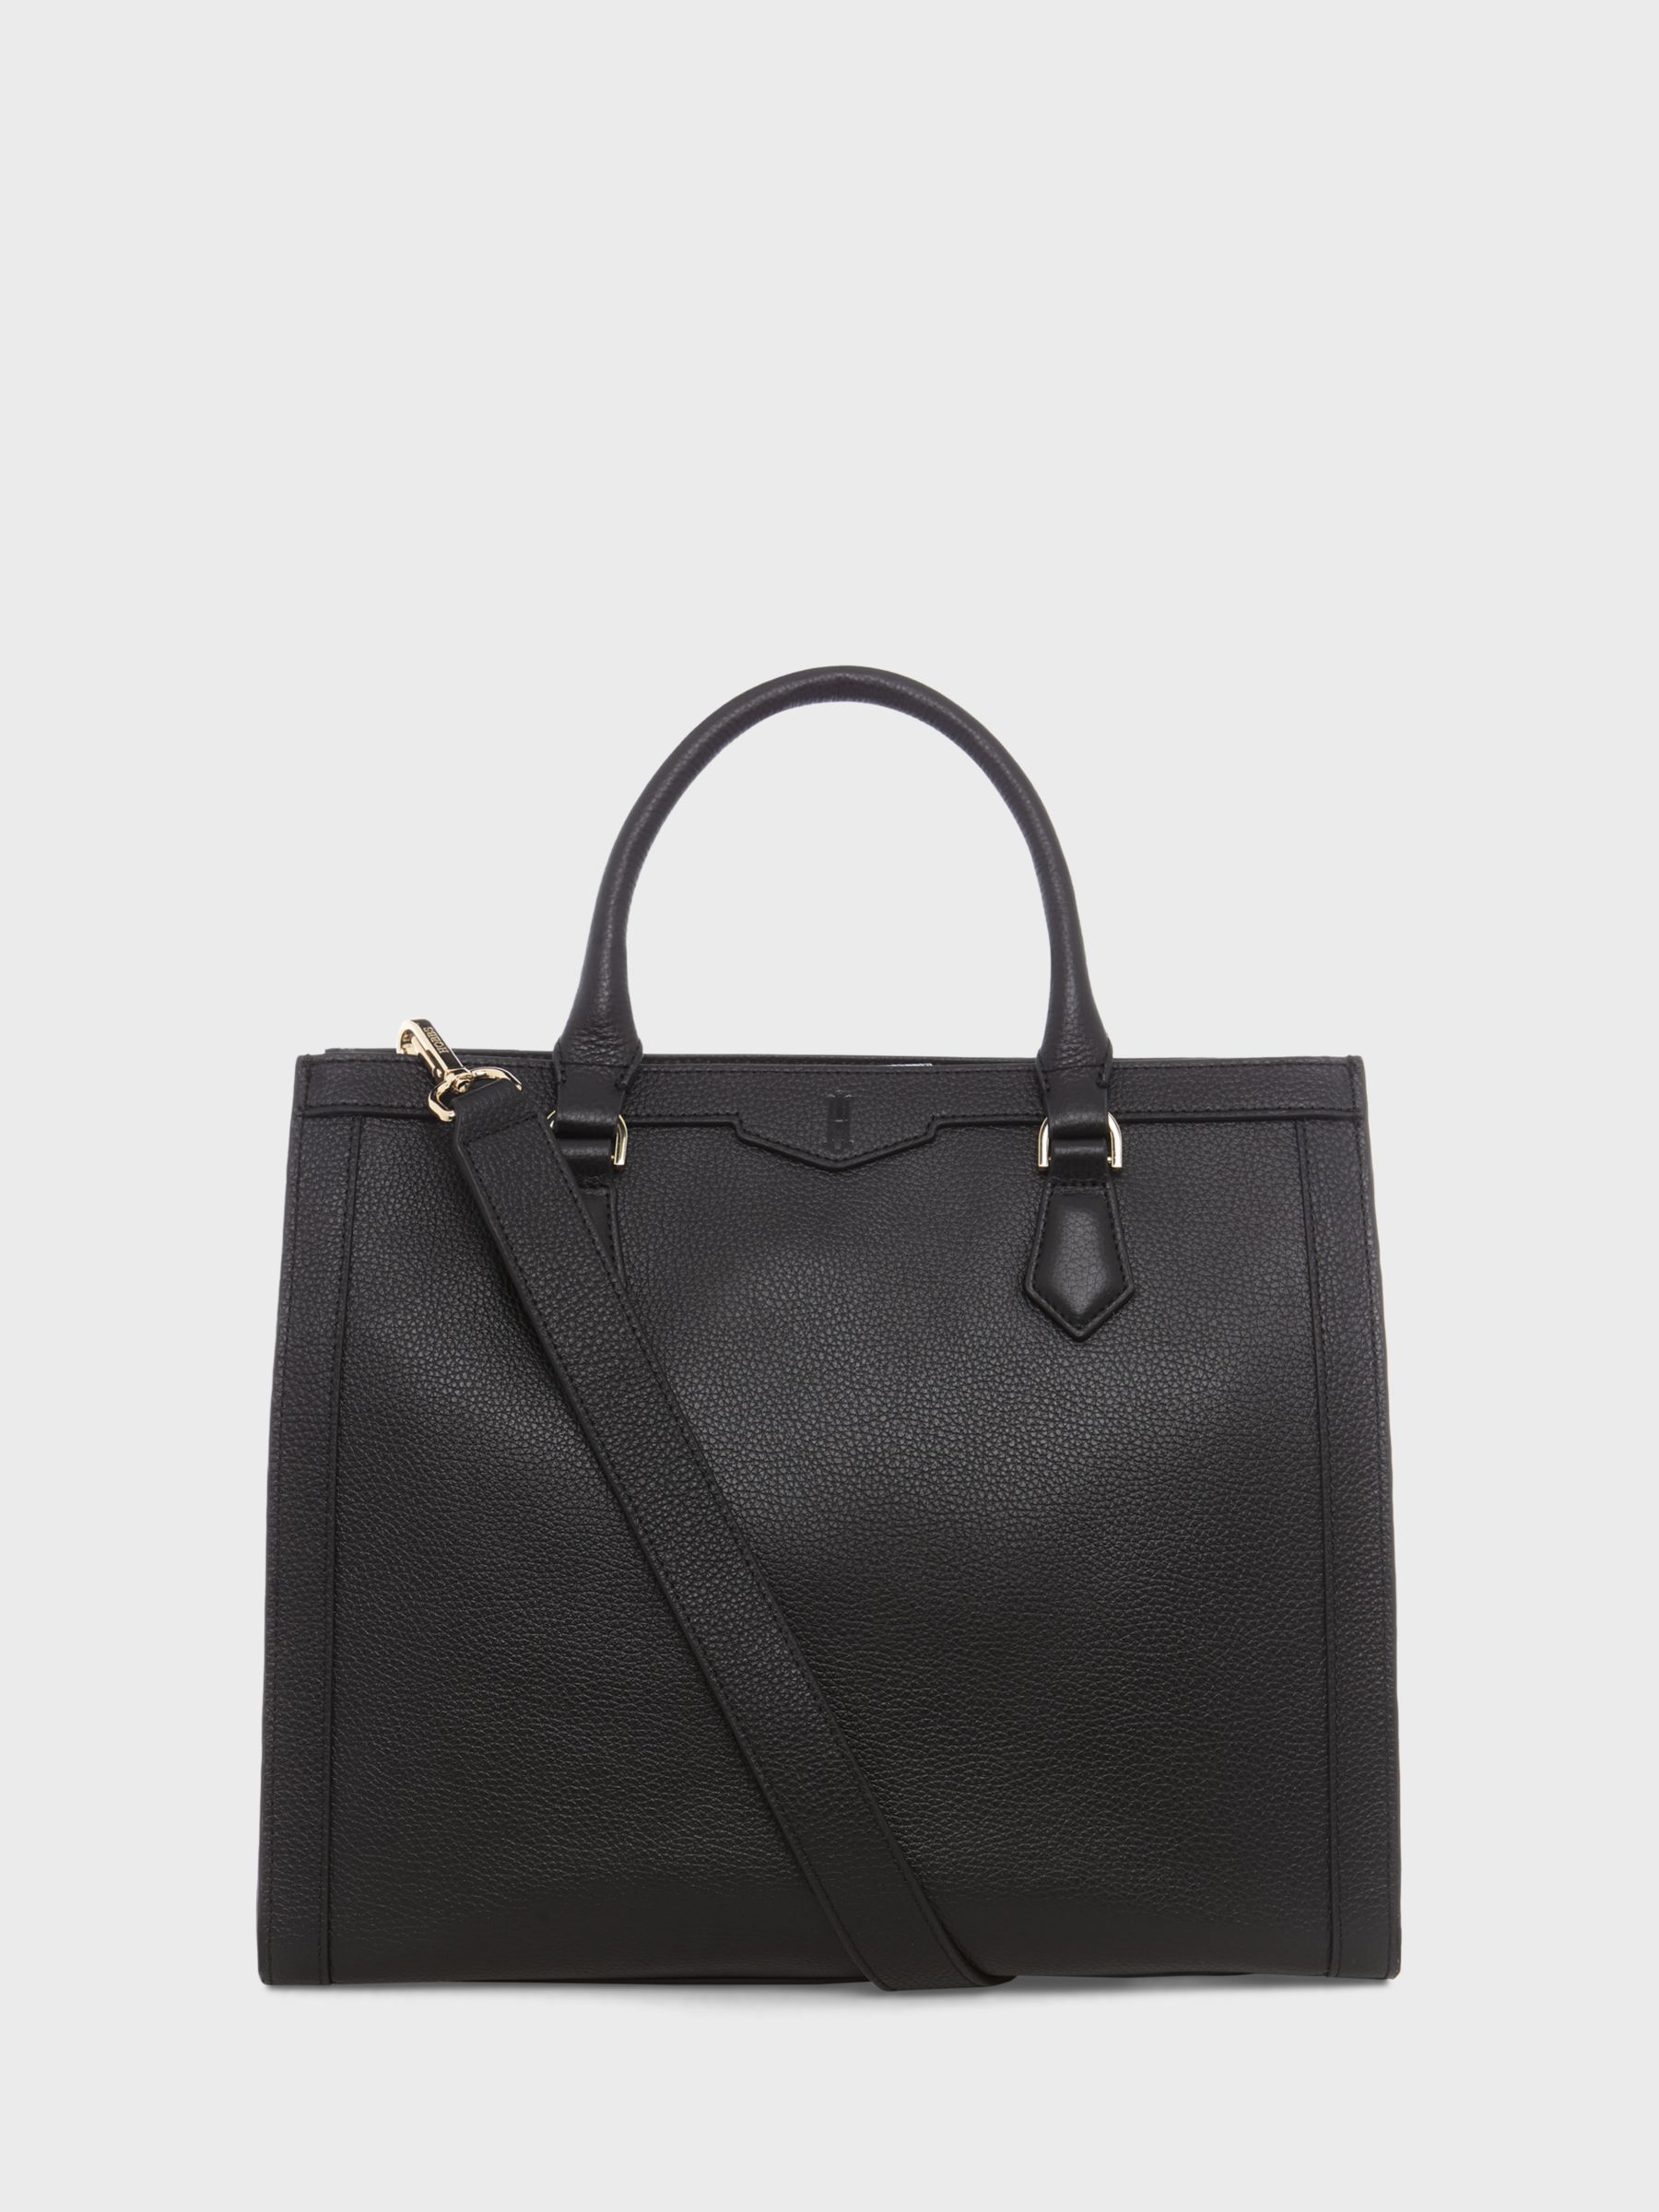 Hobbs Berkley Leather Tote Bag, Black